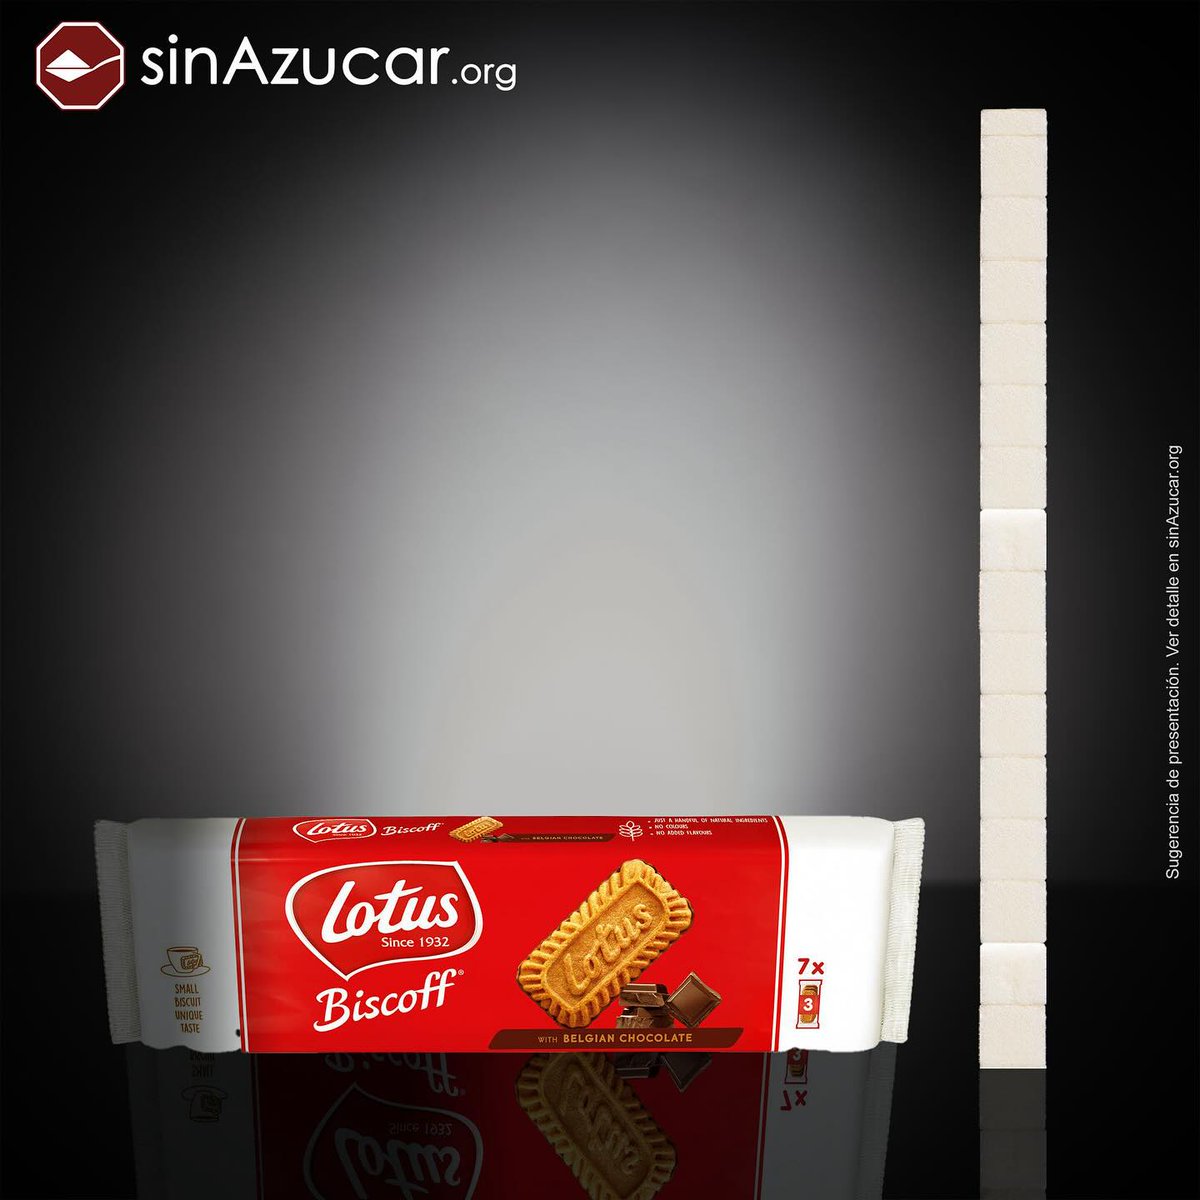 Un paquete de galletas Lotus con chocolate belga (154 g) contienen 61 g de azúcar equivalente a 15,2 terrones.